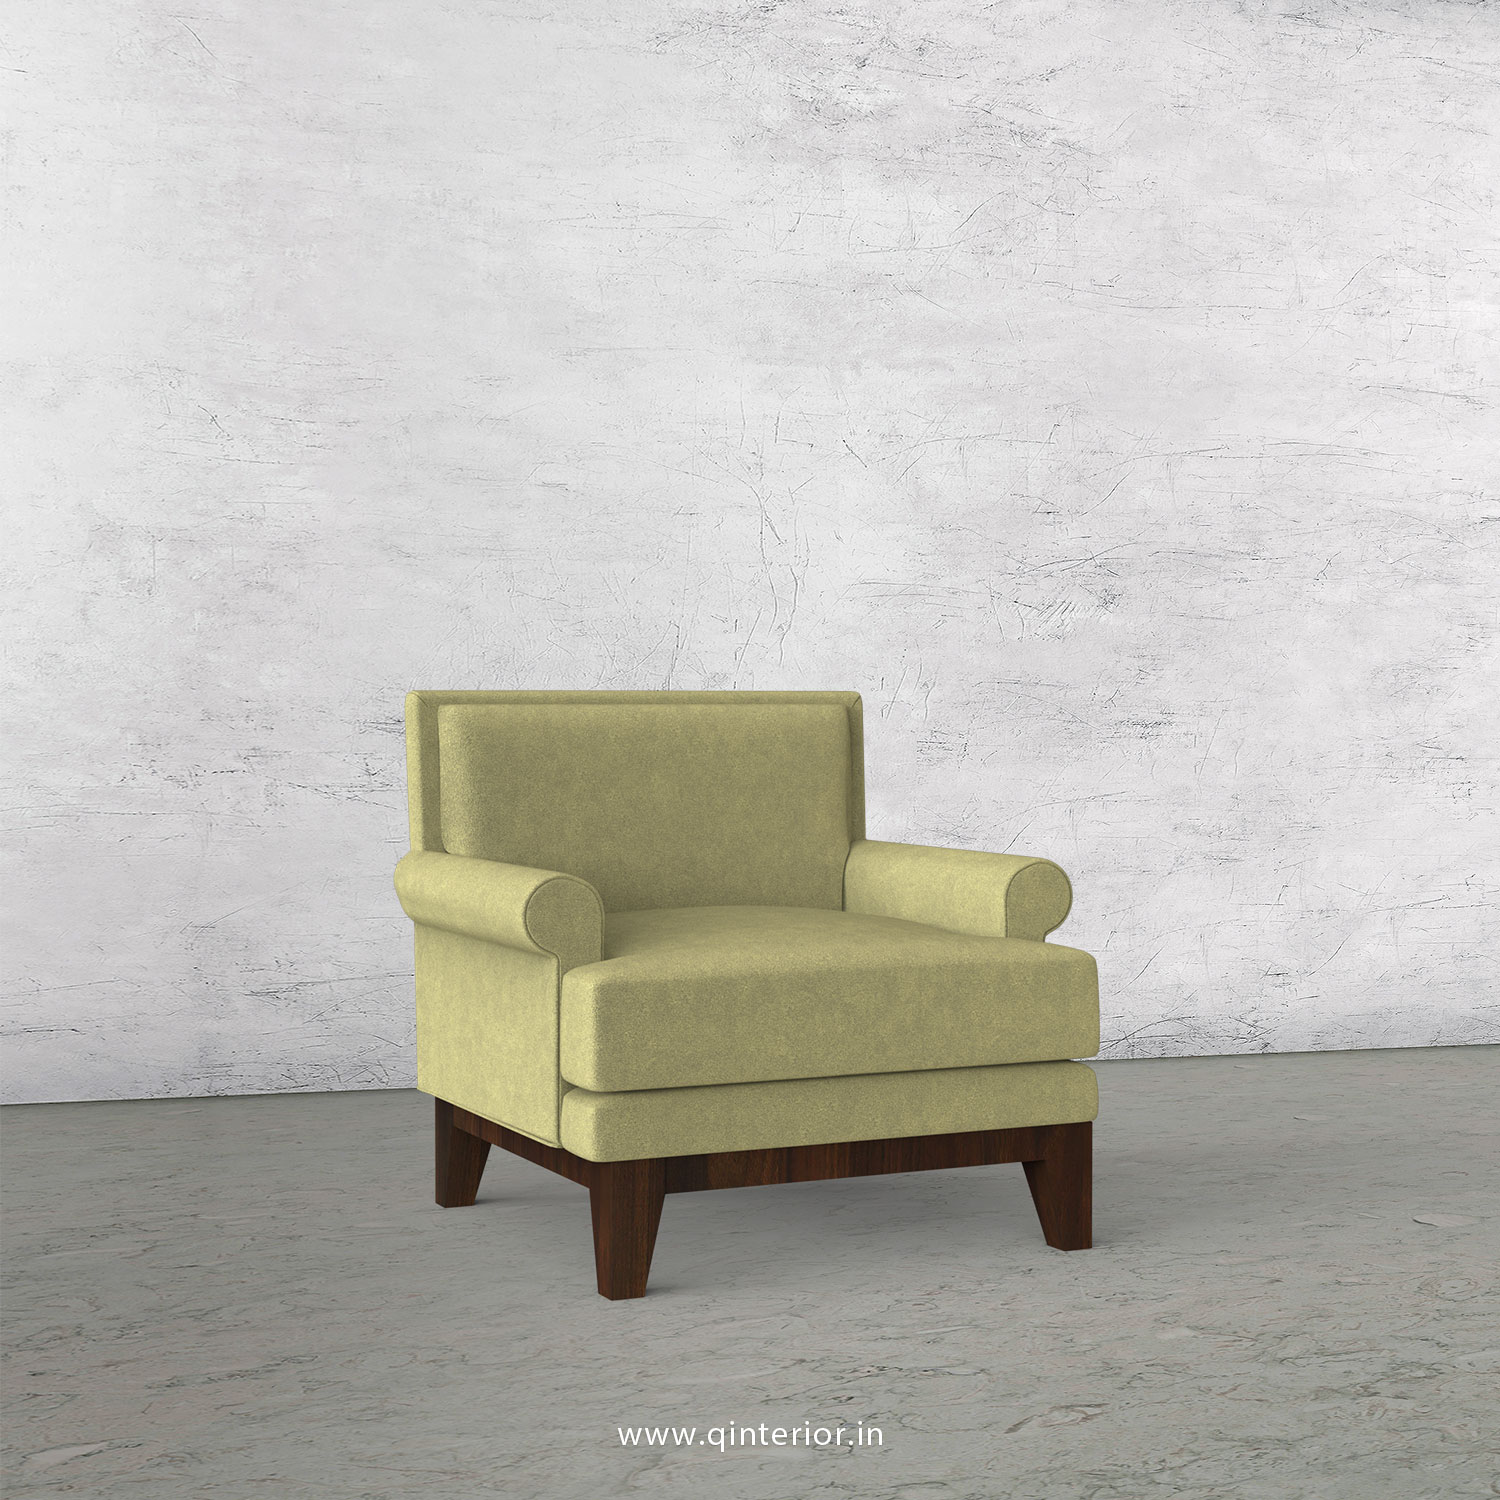 Aviana 1 Seater Sofa in Velvet Fabric - SFA001 VL04